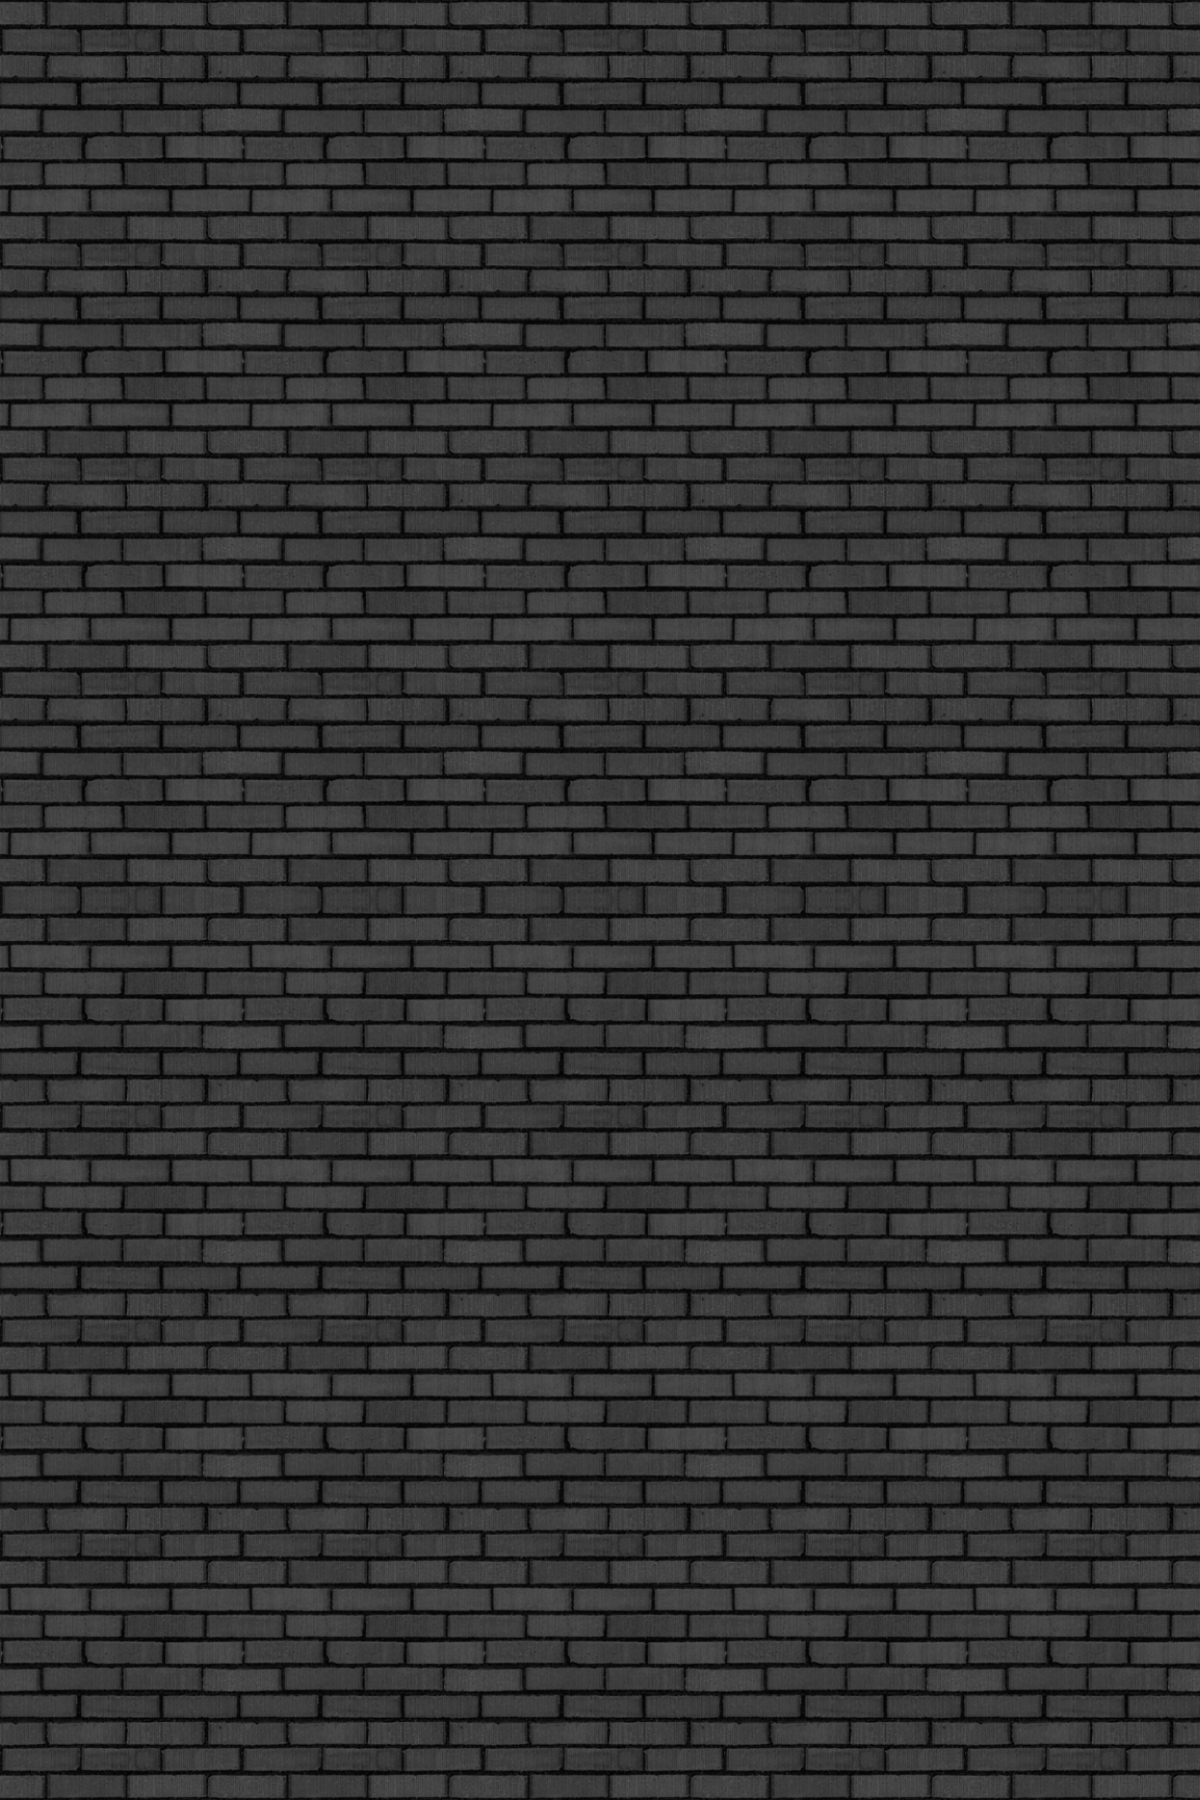 bricks_dark